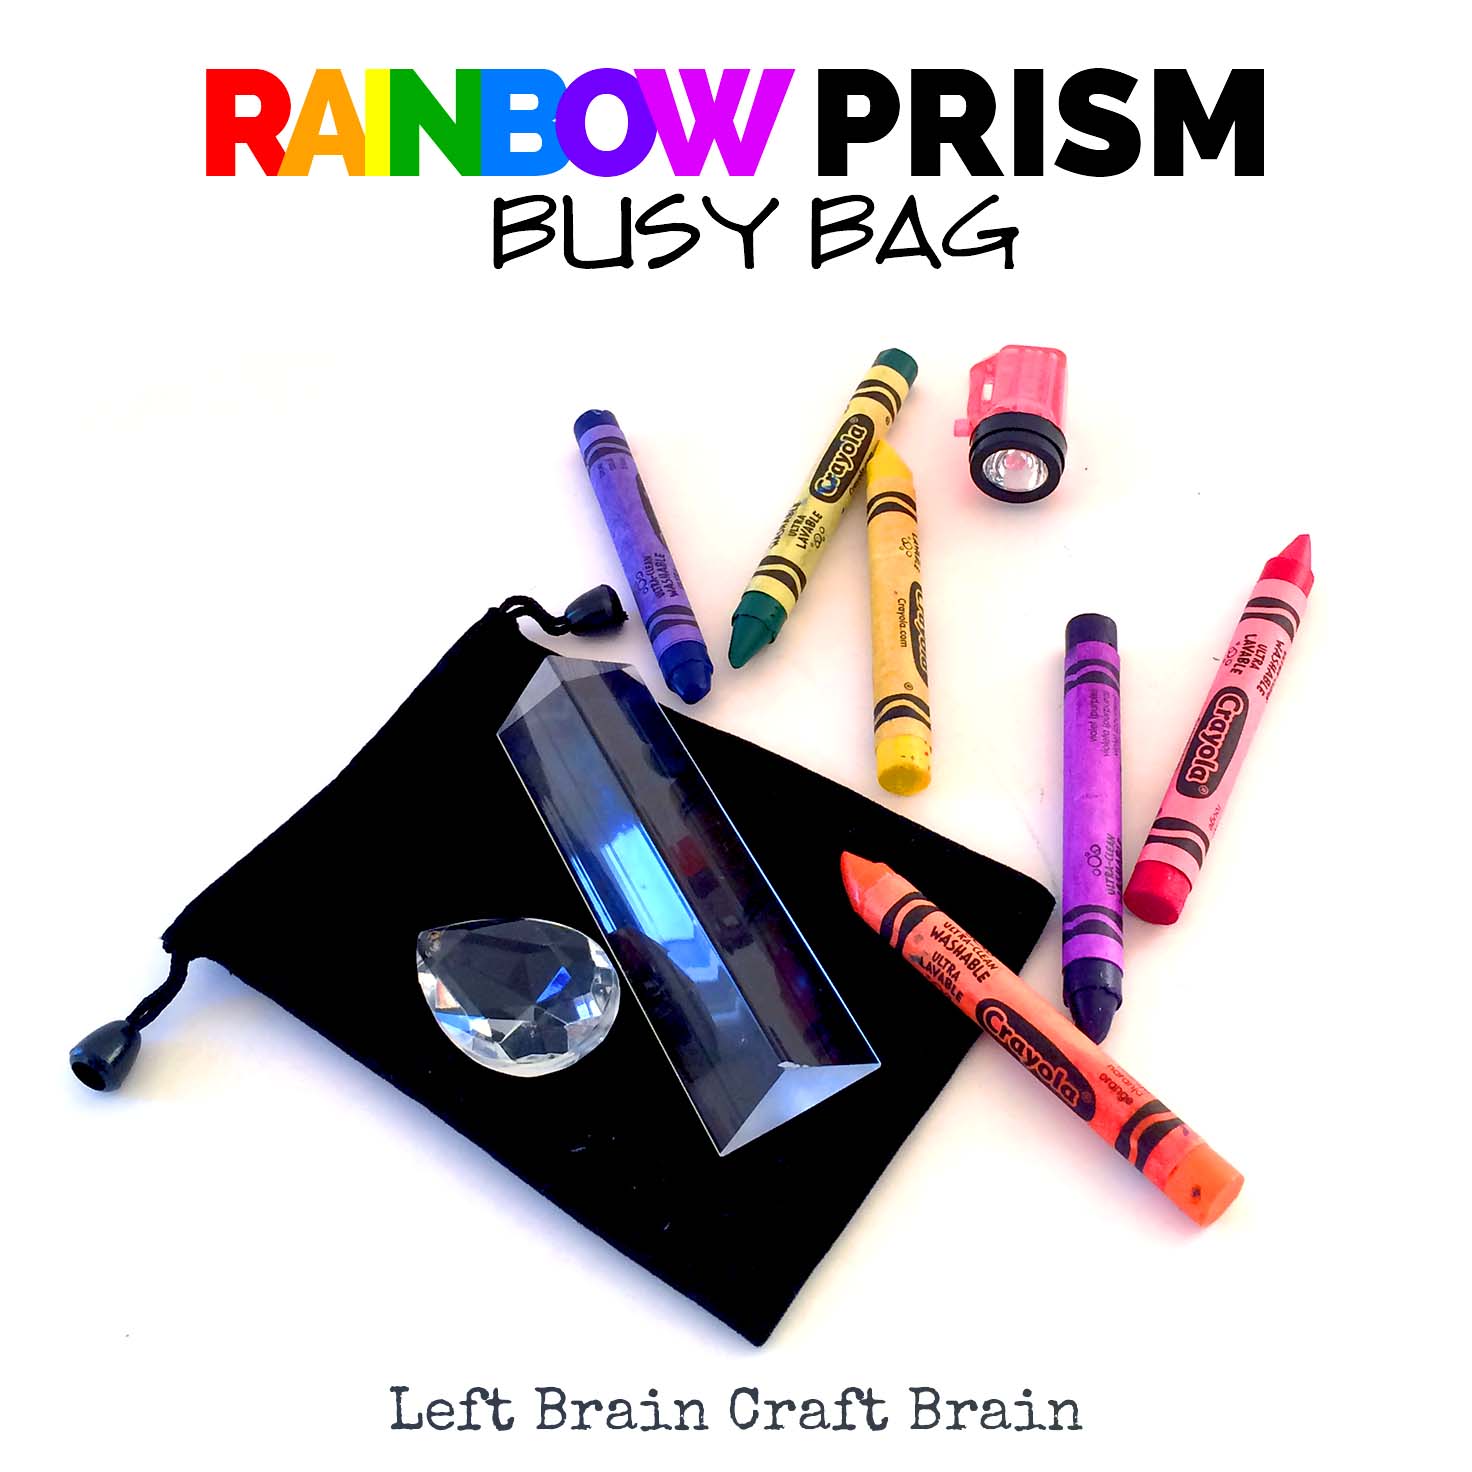 Rainbow Prism Busy Bag Left Brain Craft Brain FB